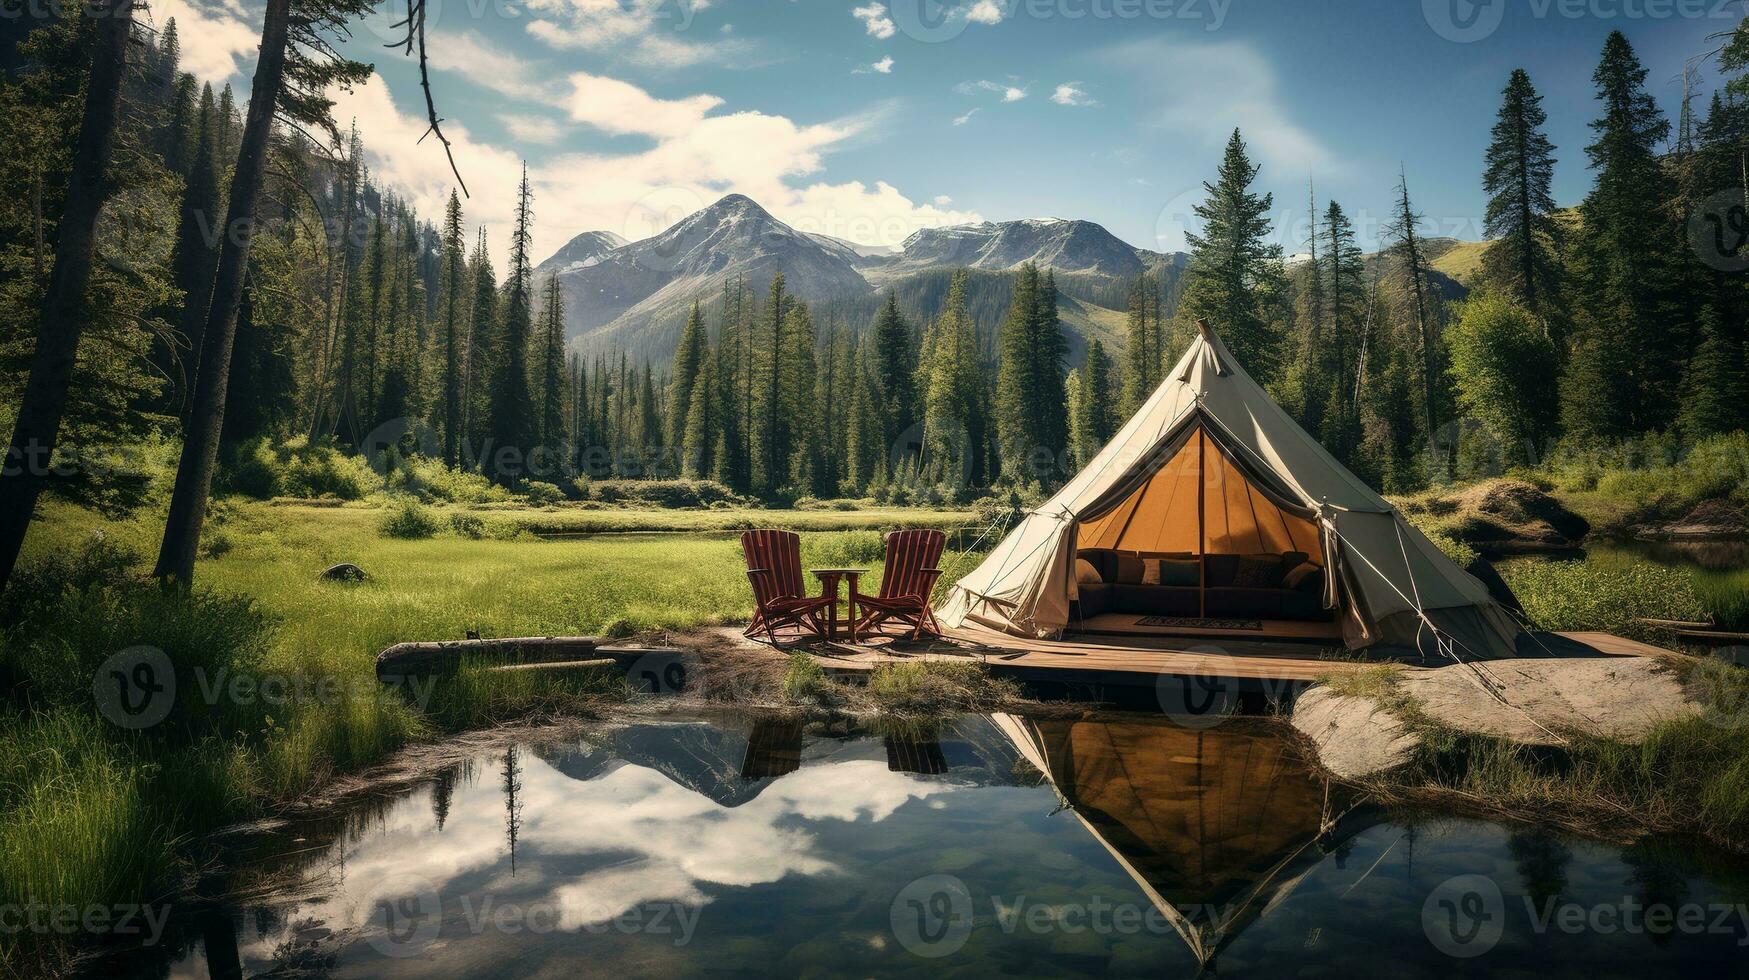 generativ ai, camping utomhus- begrepp nära de sjö eller flod, turist läger på de skön grön landskap med bergen foto